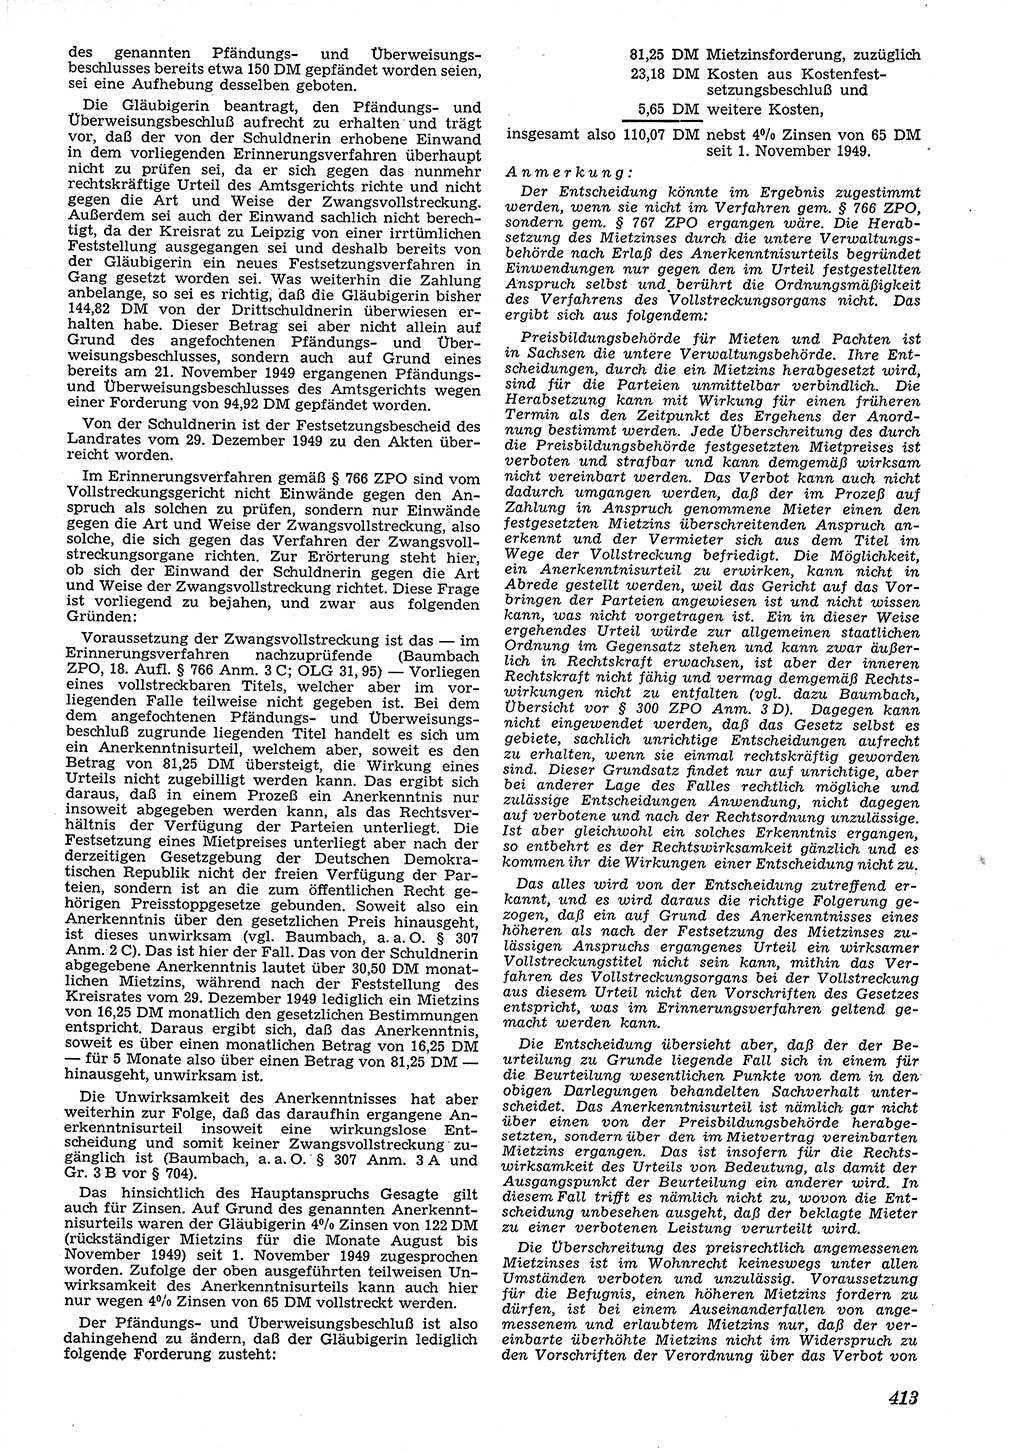 Neue Justiz (NJ), Zeitschrift für Recht und Rechtswissenschaft [Deutsche Demokratische Republik (DDR)], 4. Jahrgang 1950, Seite 413 (NJ DDR 1950, S. 413)